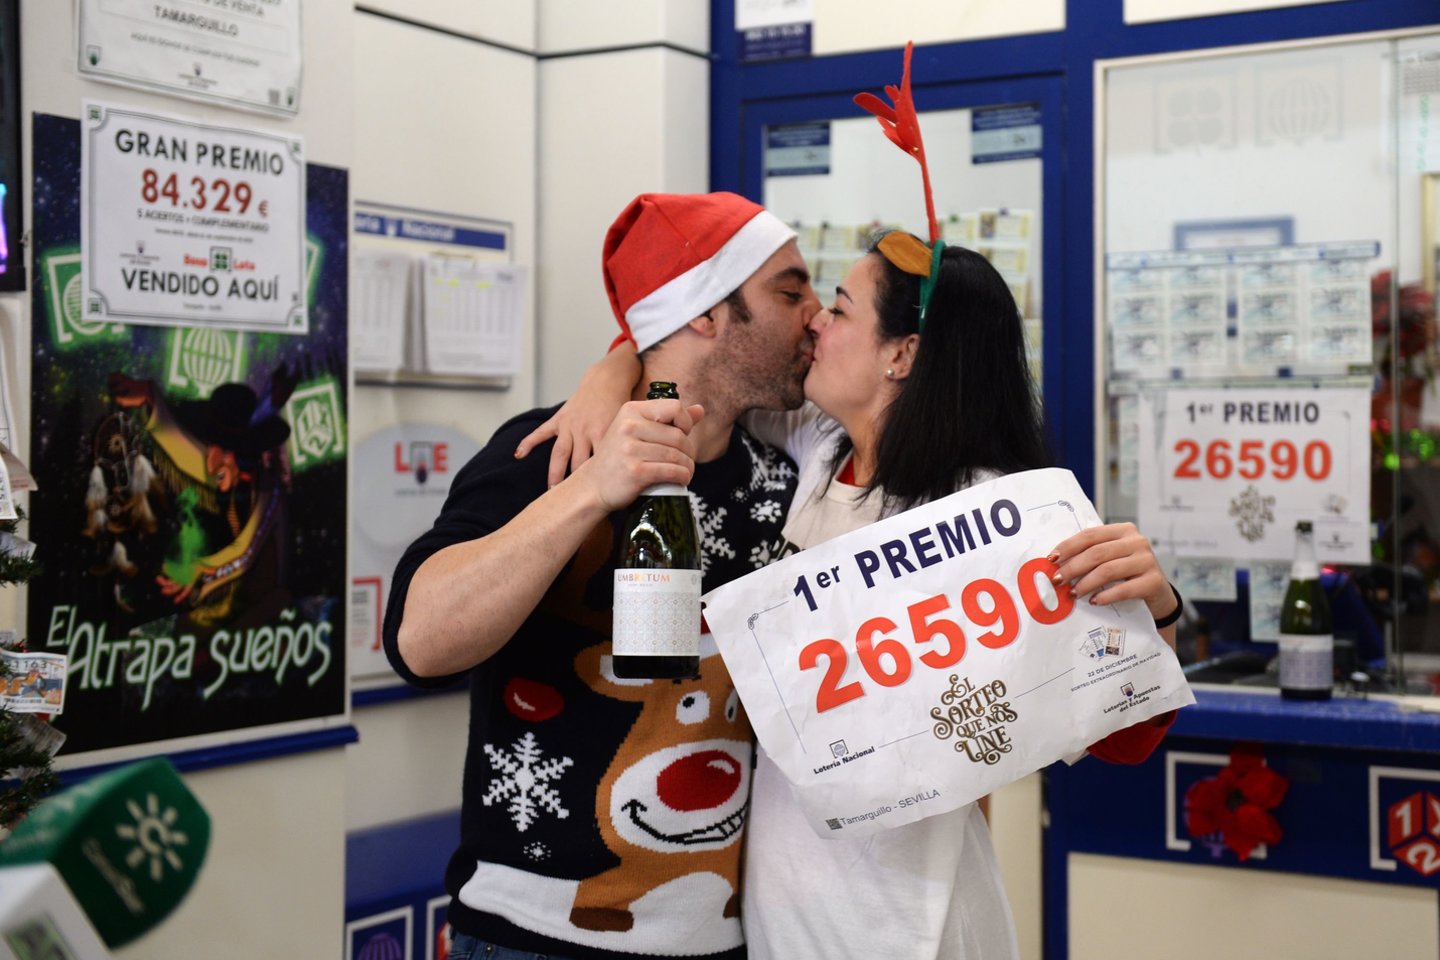  Ispanijos loterijos bilieto, kurio numeris 26590, turėtojai sekmadienio rytą galėjo džiūgauti: šis bilietas didžiulėje kalėdinėje loterijoje laimėjo pagrindinį prizą – 400 tūkst. eurų.<br> AFP/Scanpix nuotr.